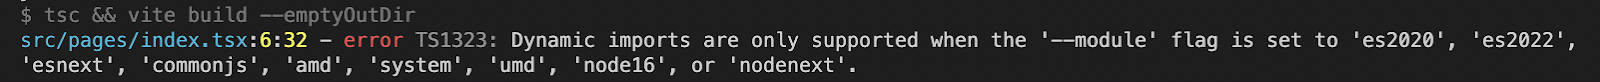 Пример: ошибка при изменении настроек tsconfig.json, в коде использовались динамические импорты для codesplitting  